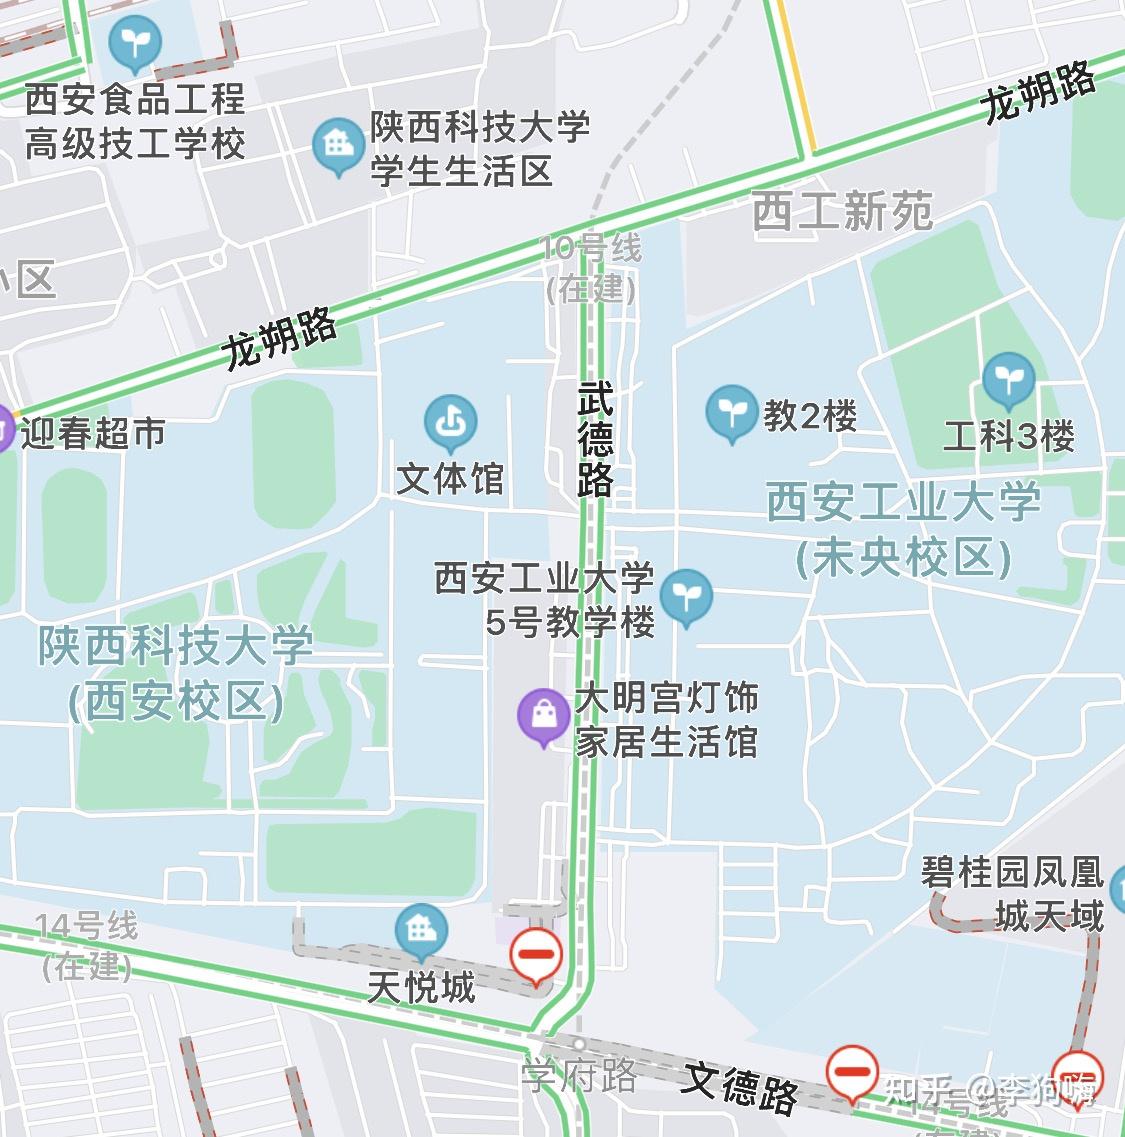 如何看待陕科大因对地铁站命名为西安工业大学不满其旗下幼儿园拒收